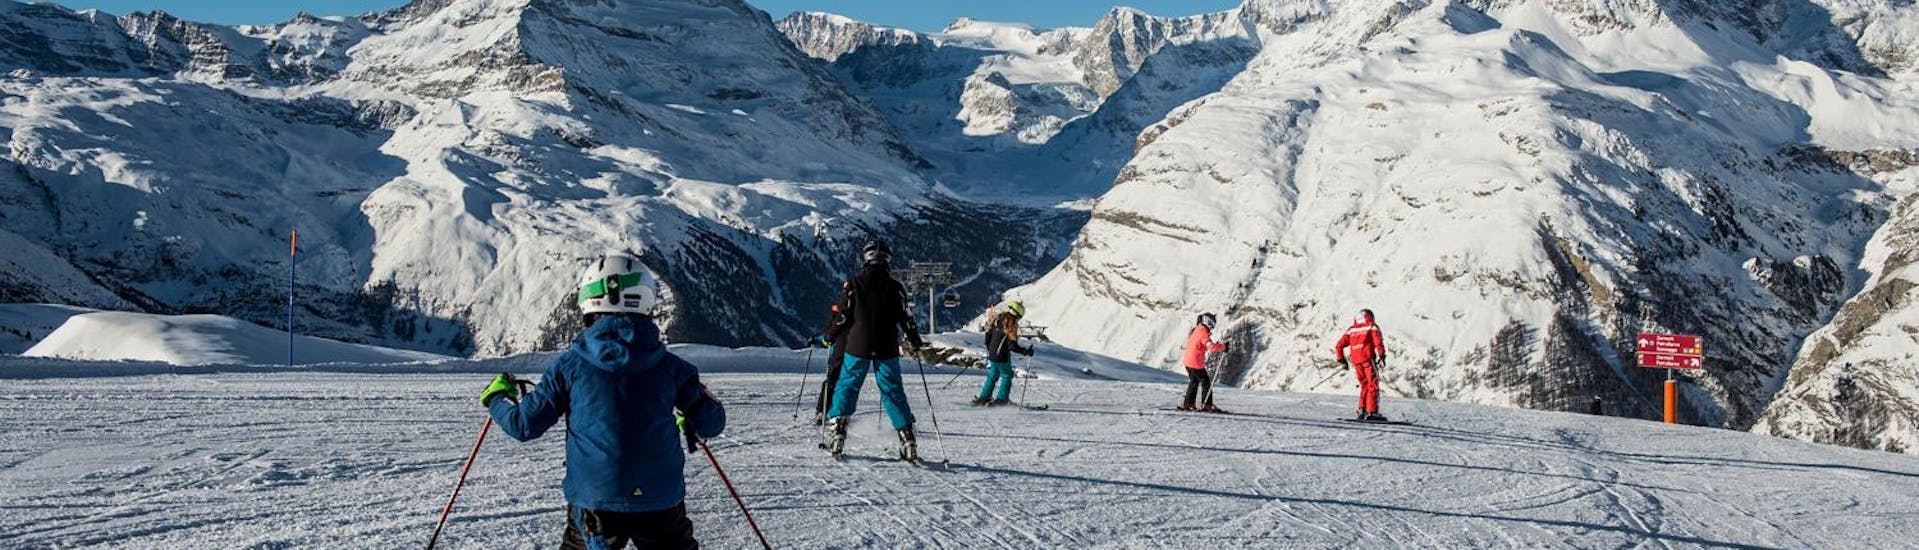 Les participants de Cours de Ski pour Enfants (6-14 ans) - Experimenté avec l'ecole de ski Zermatters suivent leurs moniteurs de ski sur les pistes de Matterhorn Ski Paradise.